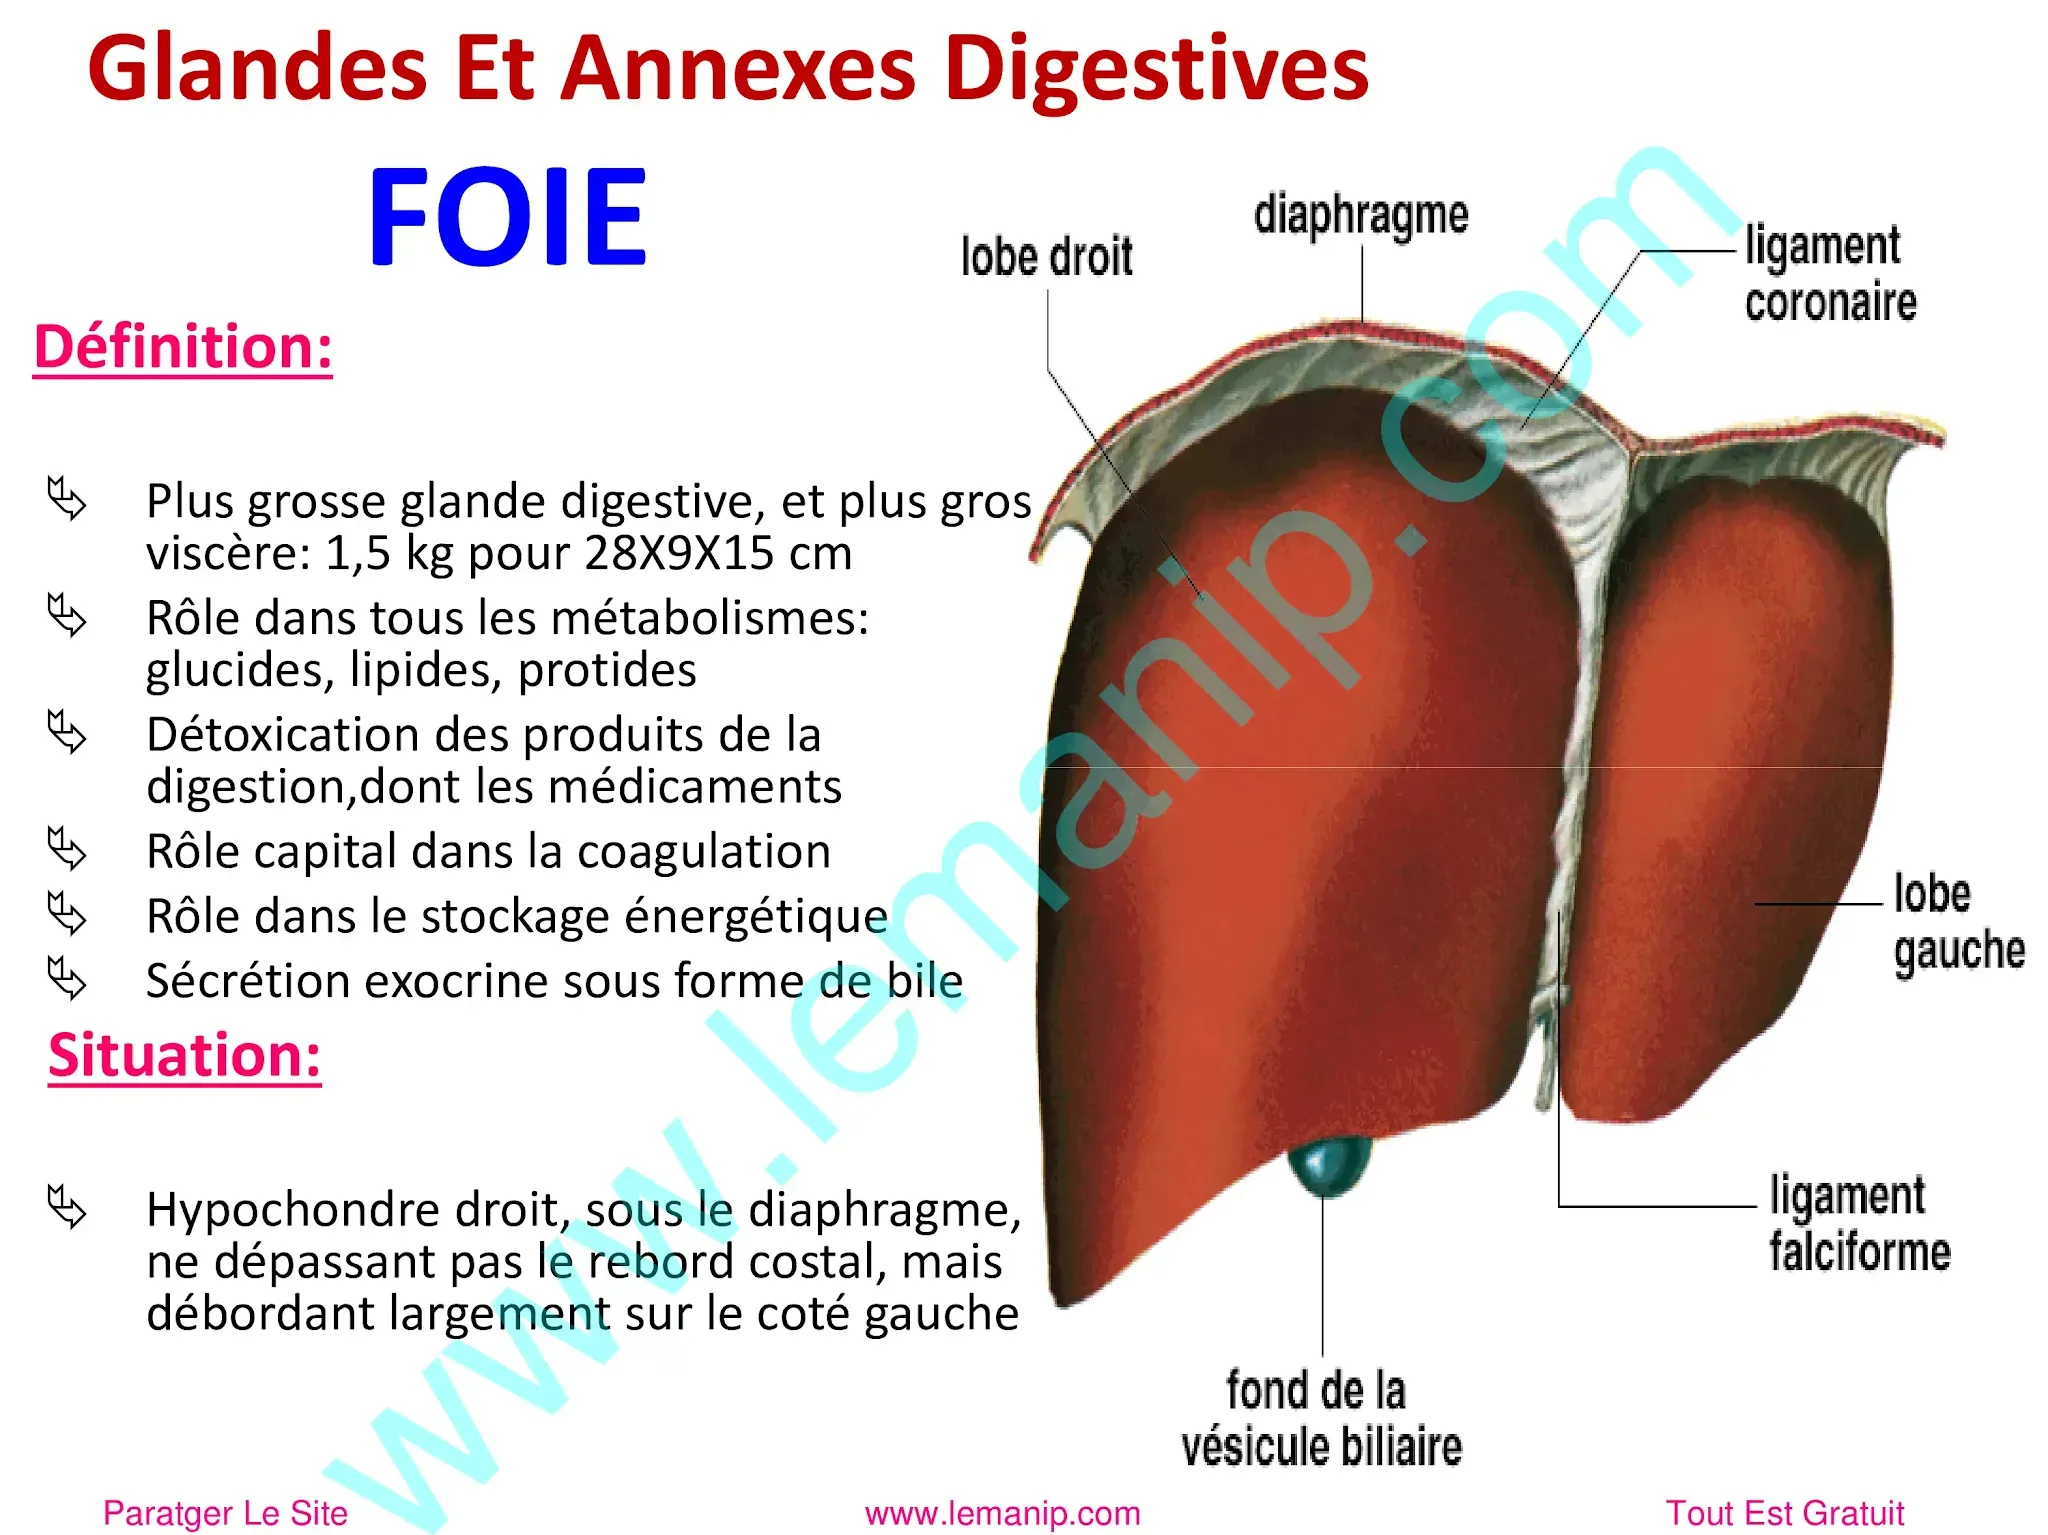 Glandes Et Annexes Digestives : Le Foie